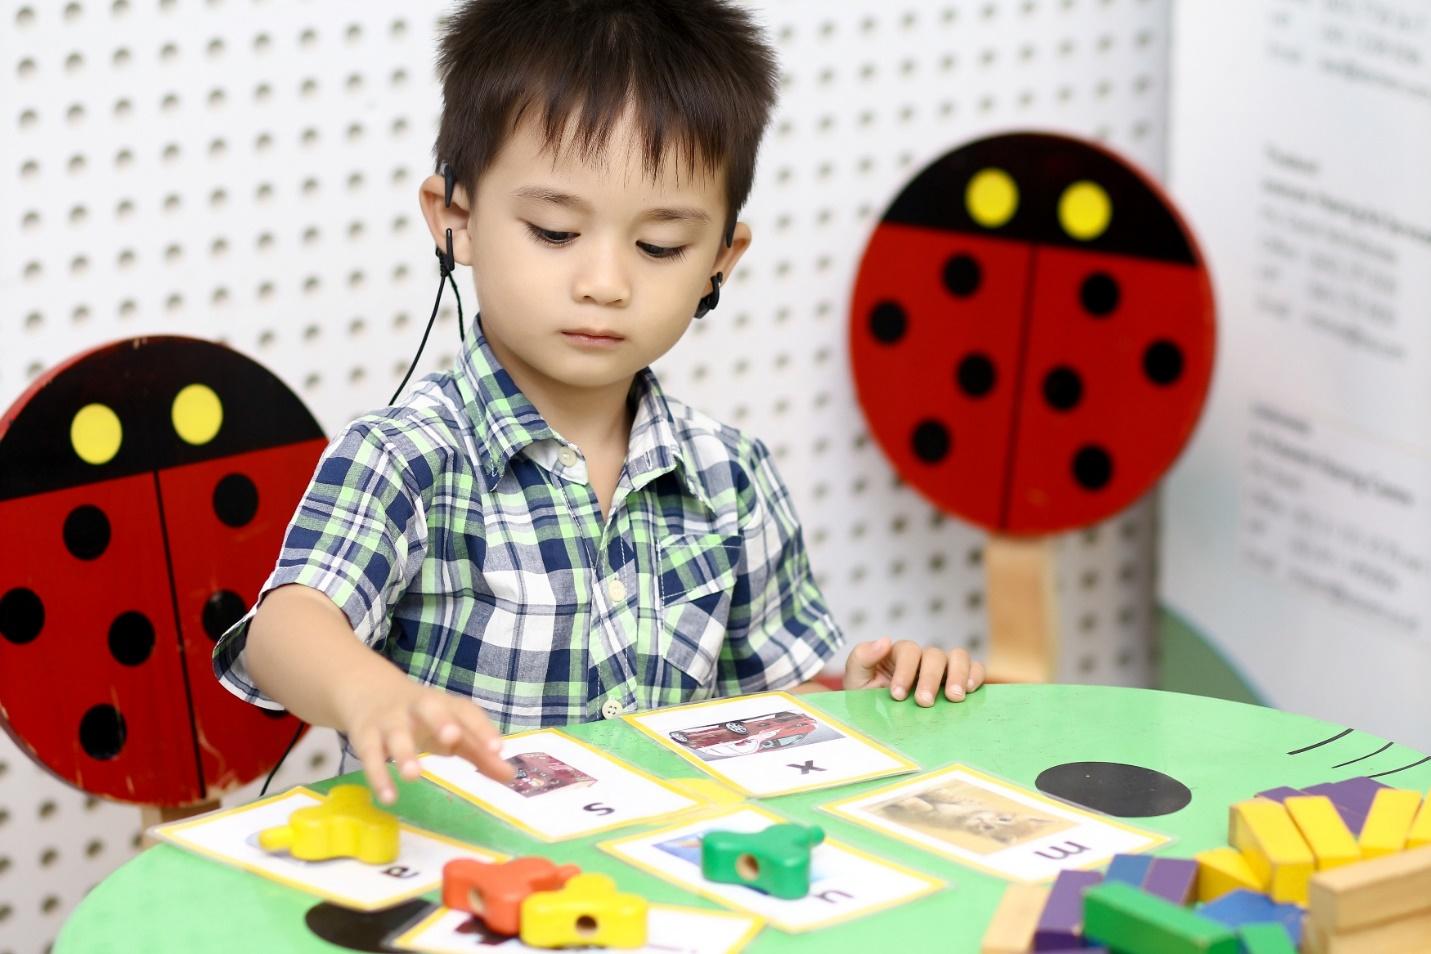 Bài dạy trẻ khi mới bật máy Cochlear hoặc mới đeo máy trợ thính